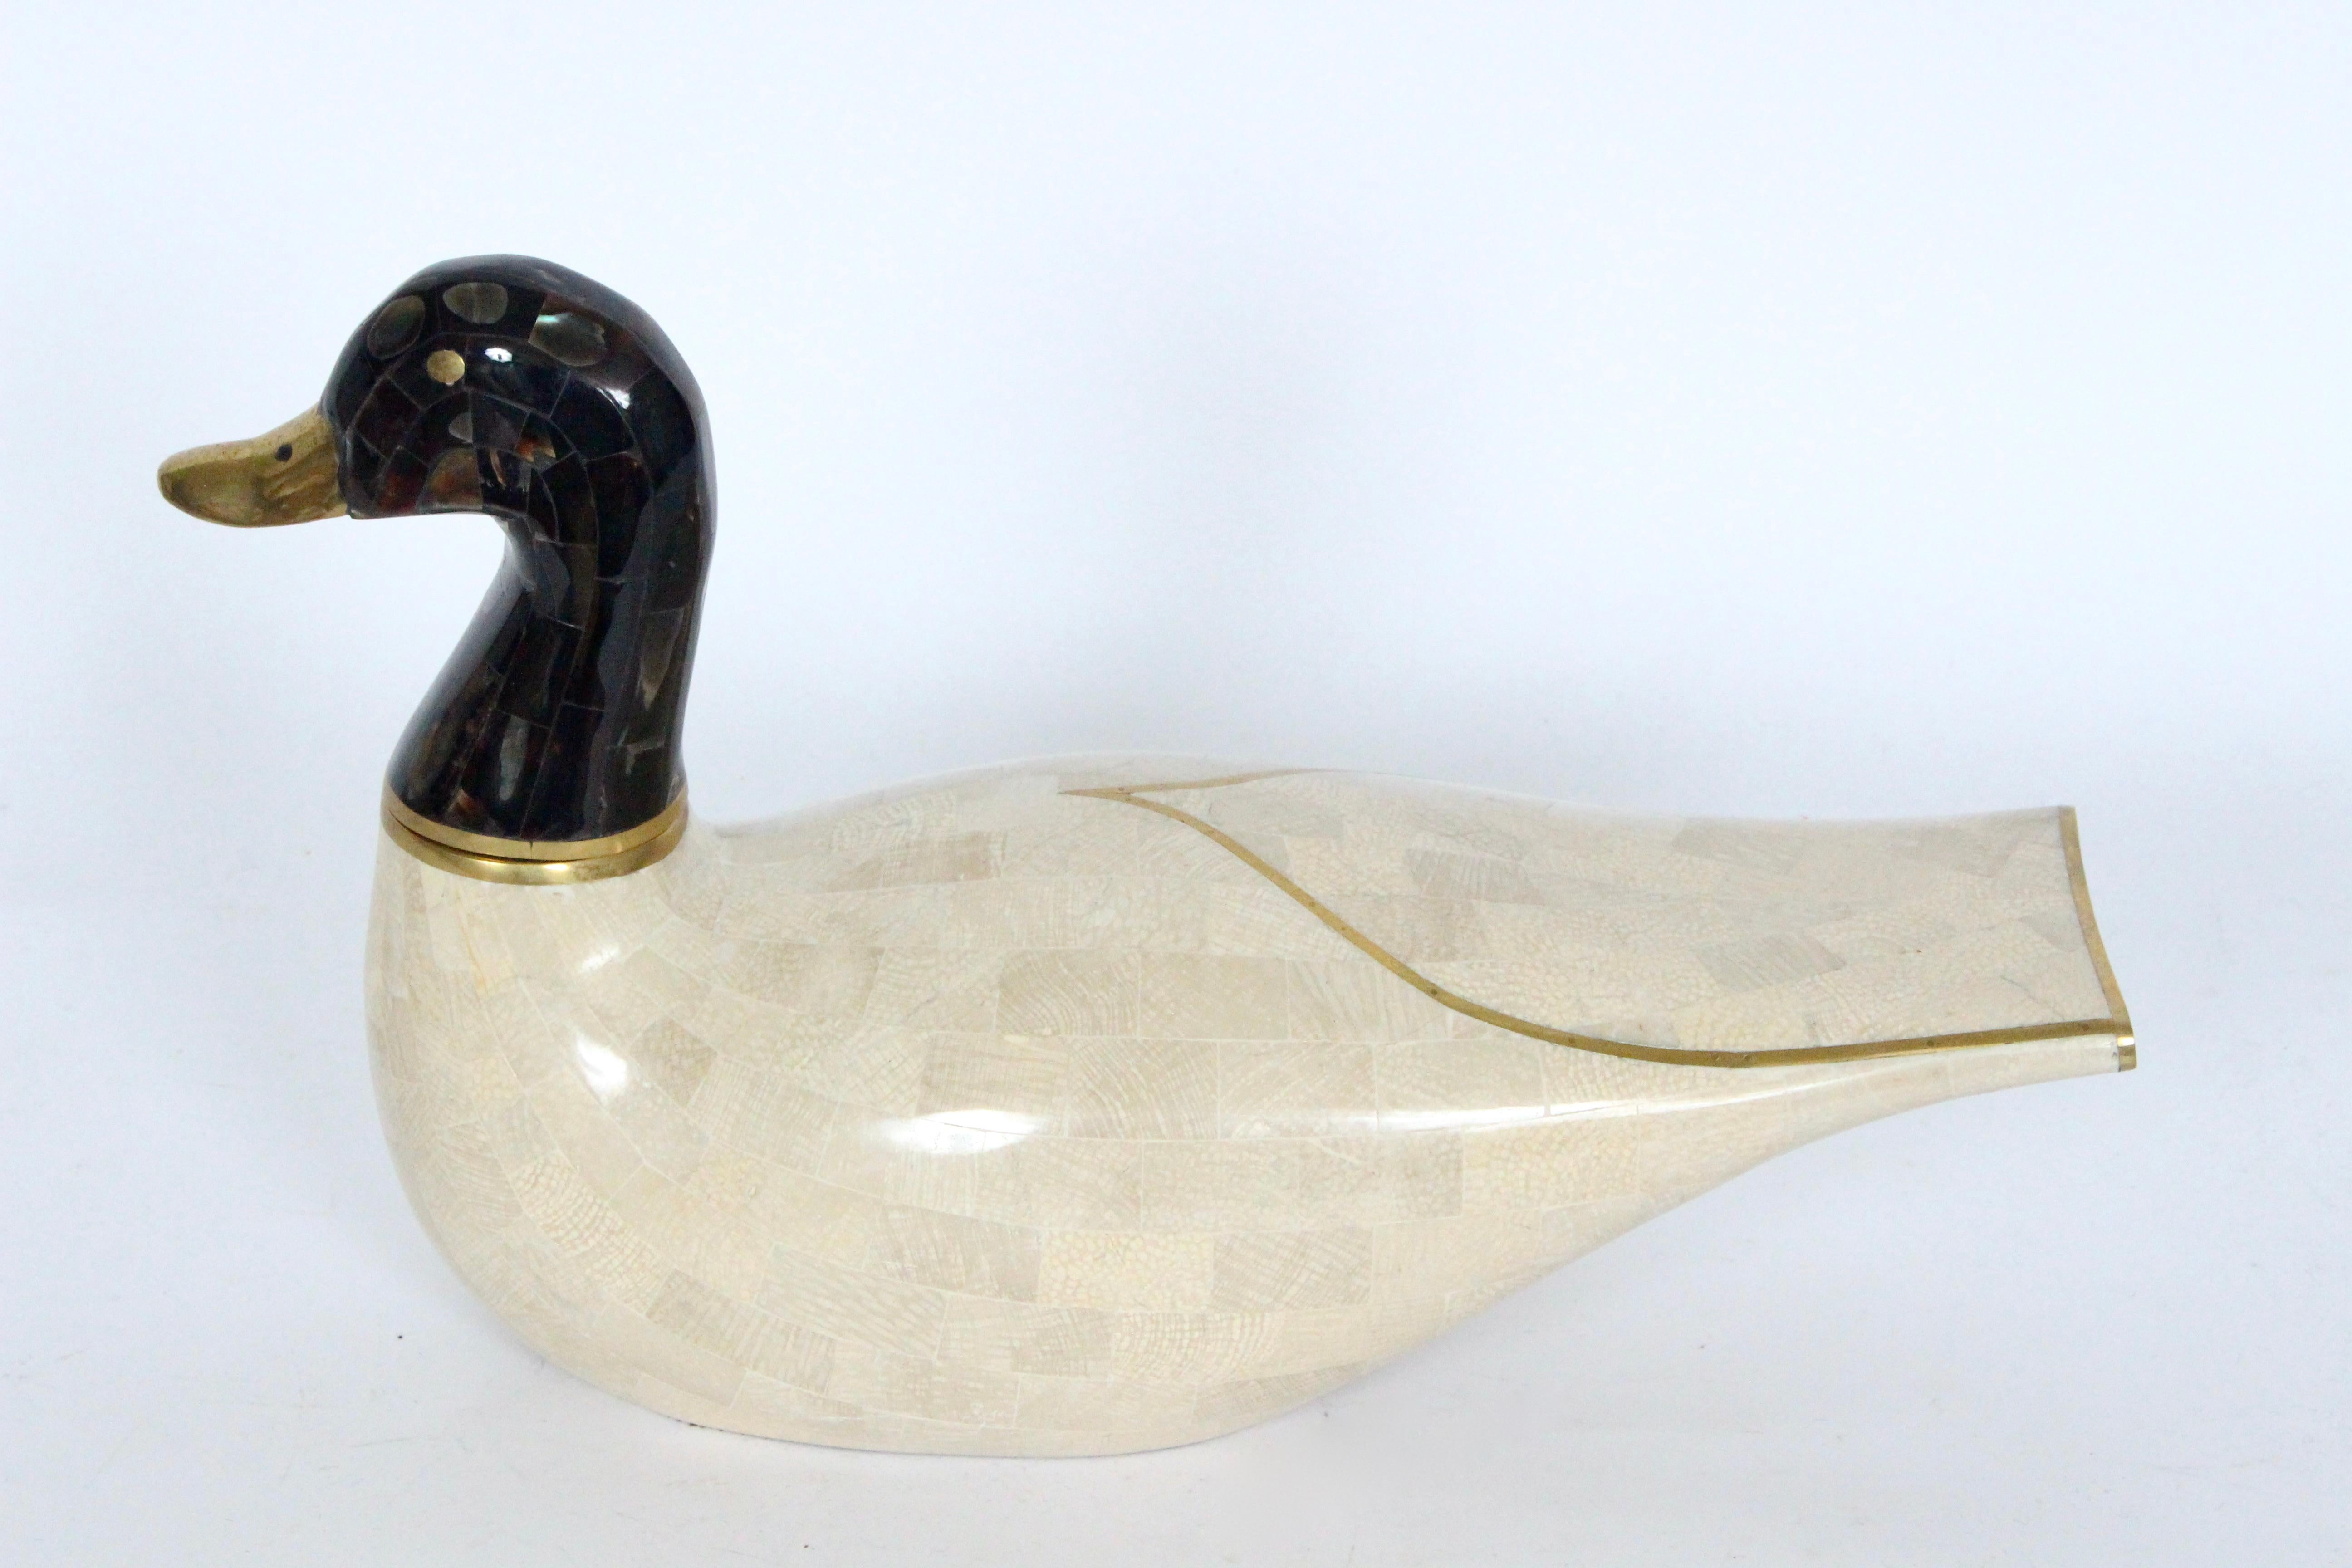 1988 Maitland Smith handgefertigter mosaikartiger dekorativer Wasservogel aus Marmor. Die ovale, schwimmende Wasservogelform ist mit elfenbeinfarbenem, cremefarbenem, mosaikartigem Marmor akzentuiert. Der Körper ist mit Akzenten aus Messing